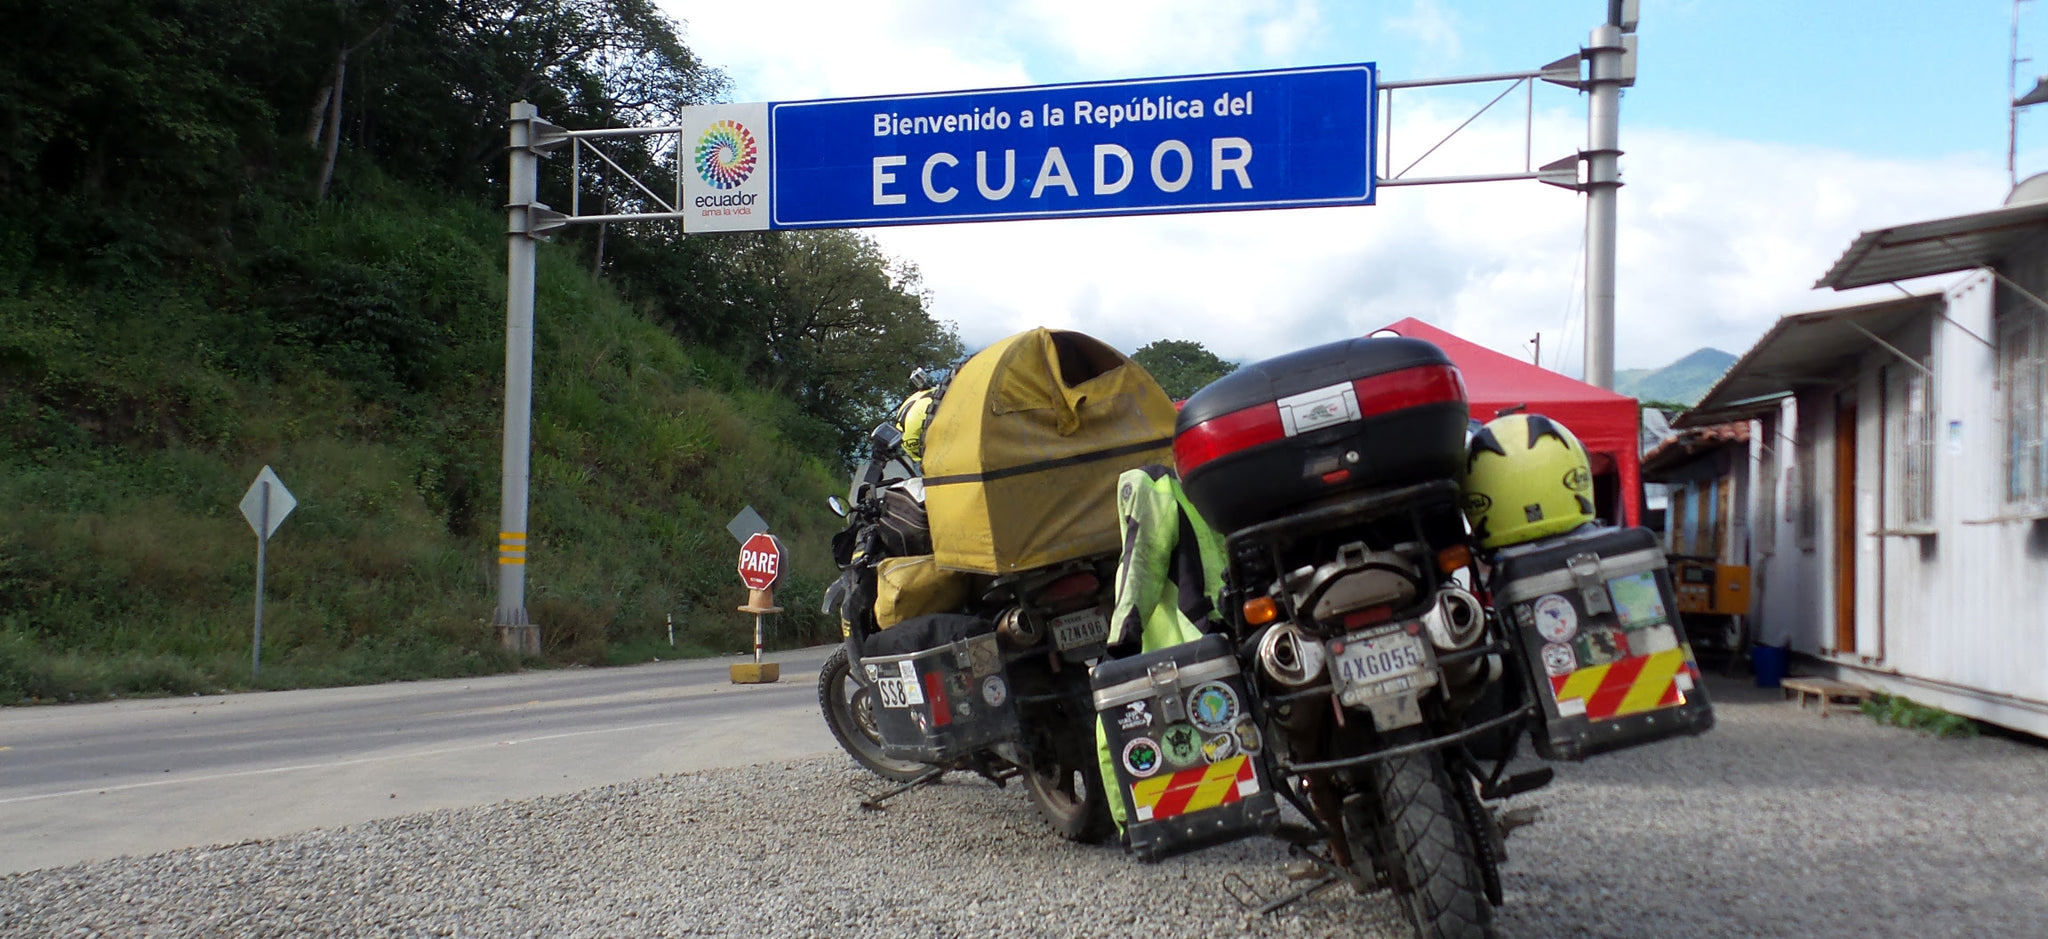 Entering Ecuador